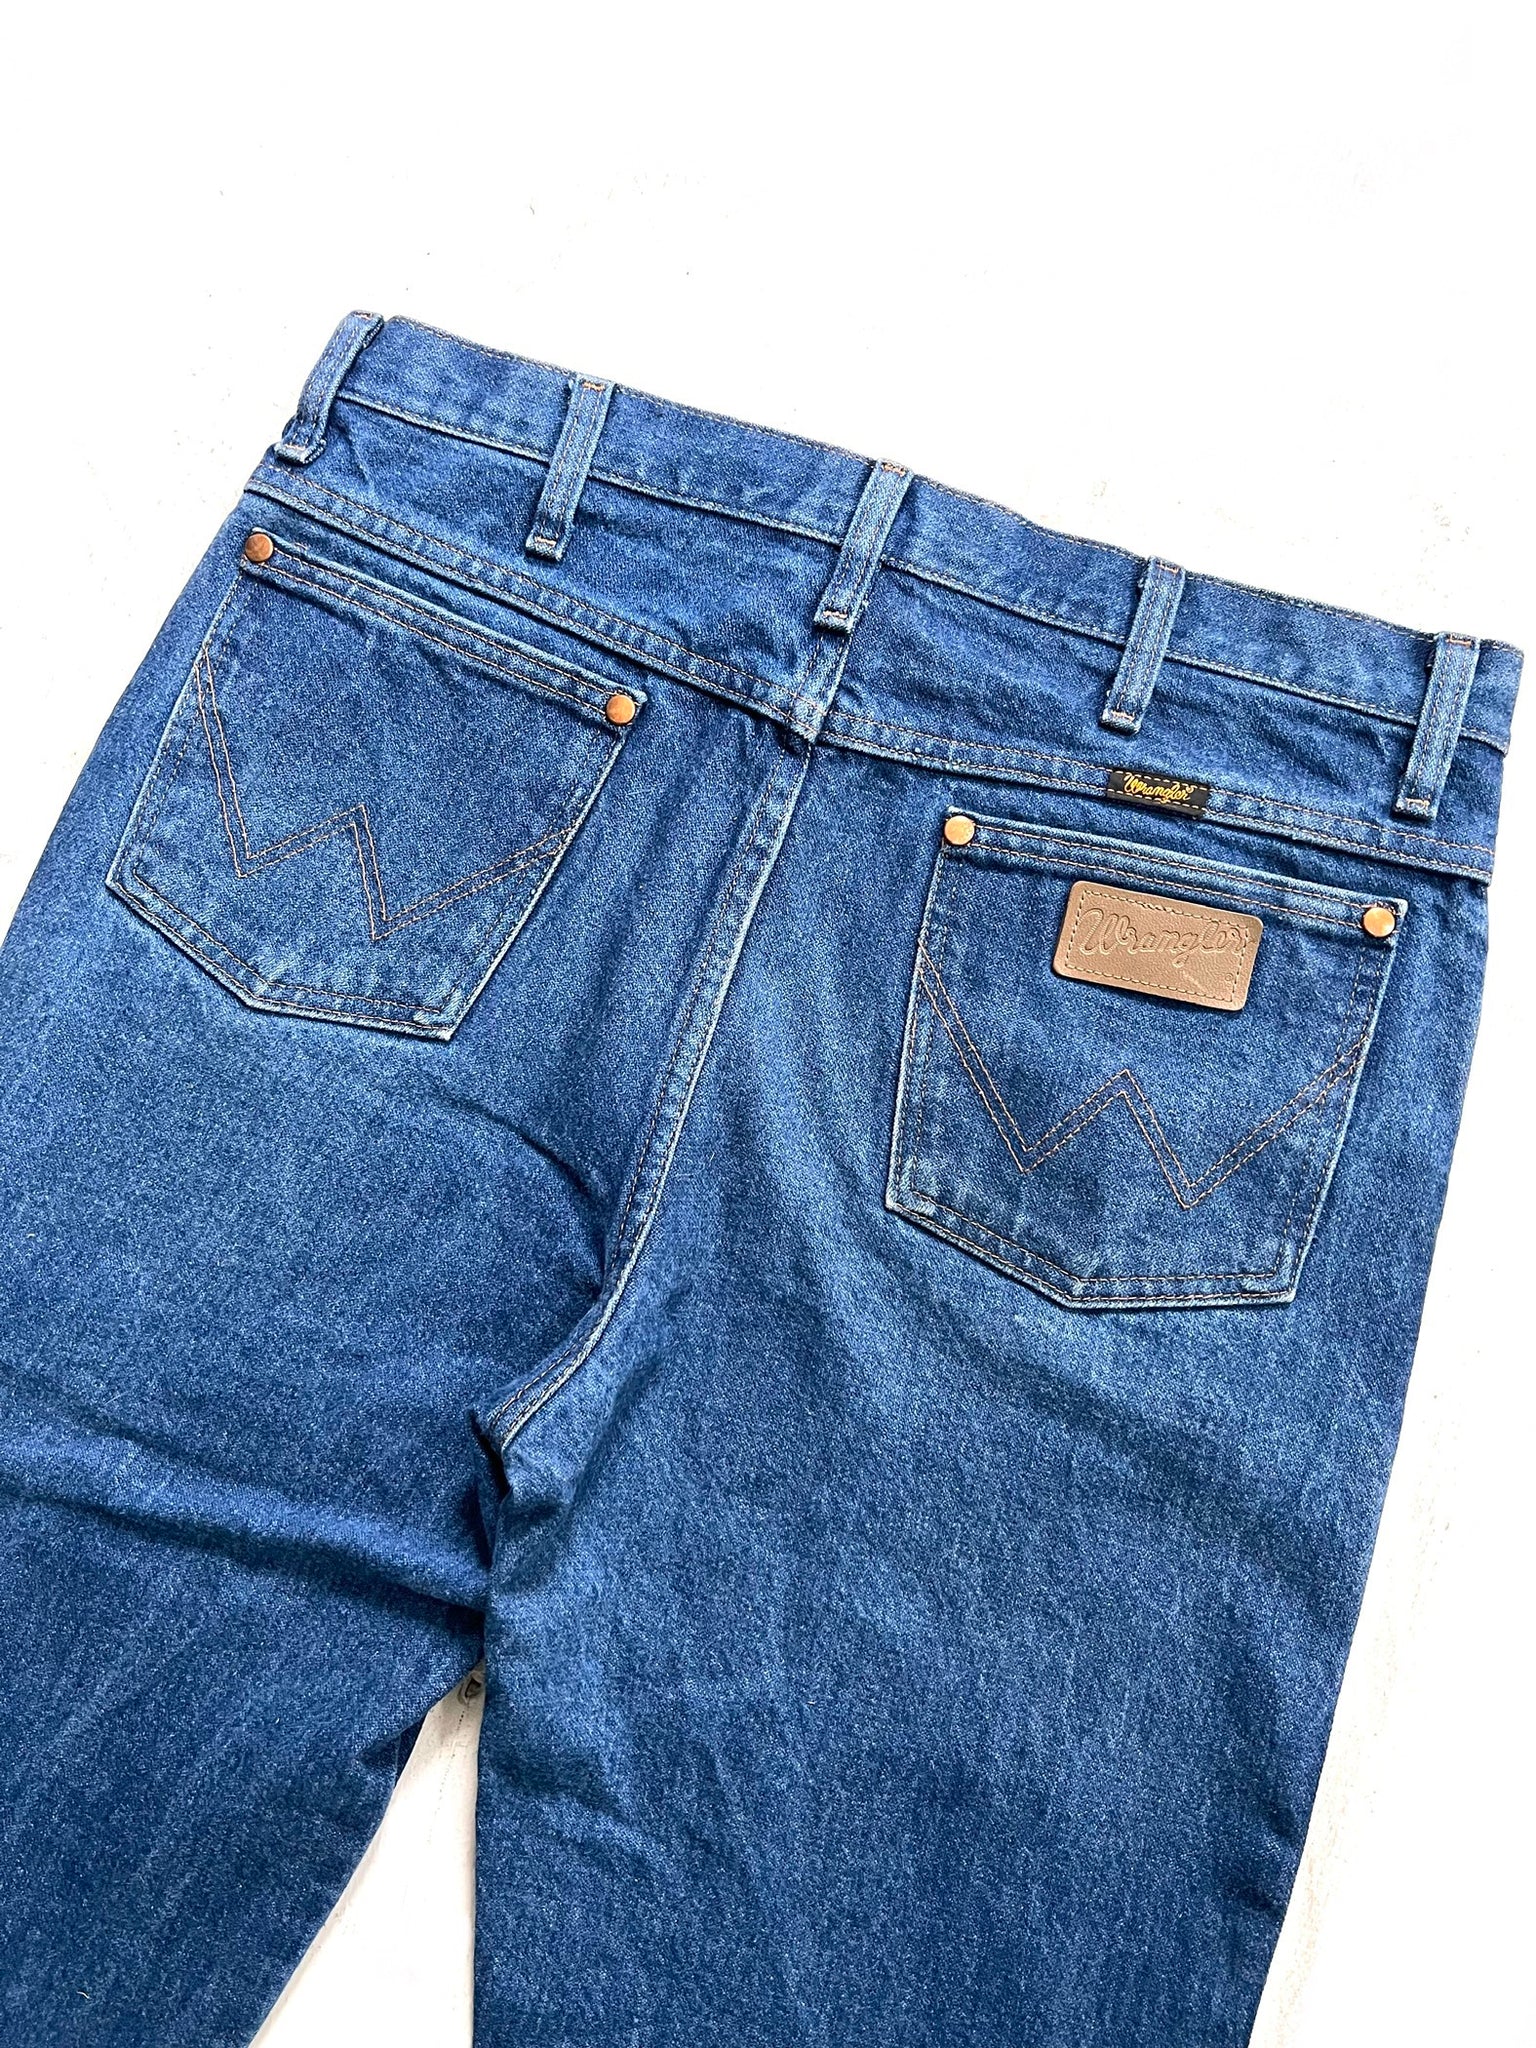 Wrangler Dark Wash Jeans 33” x 32”